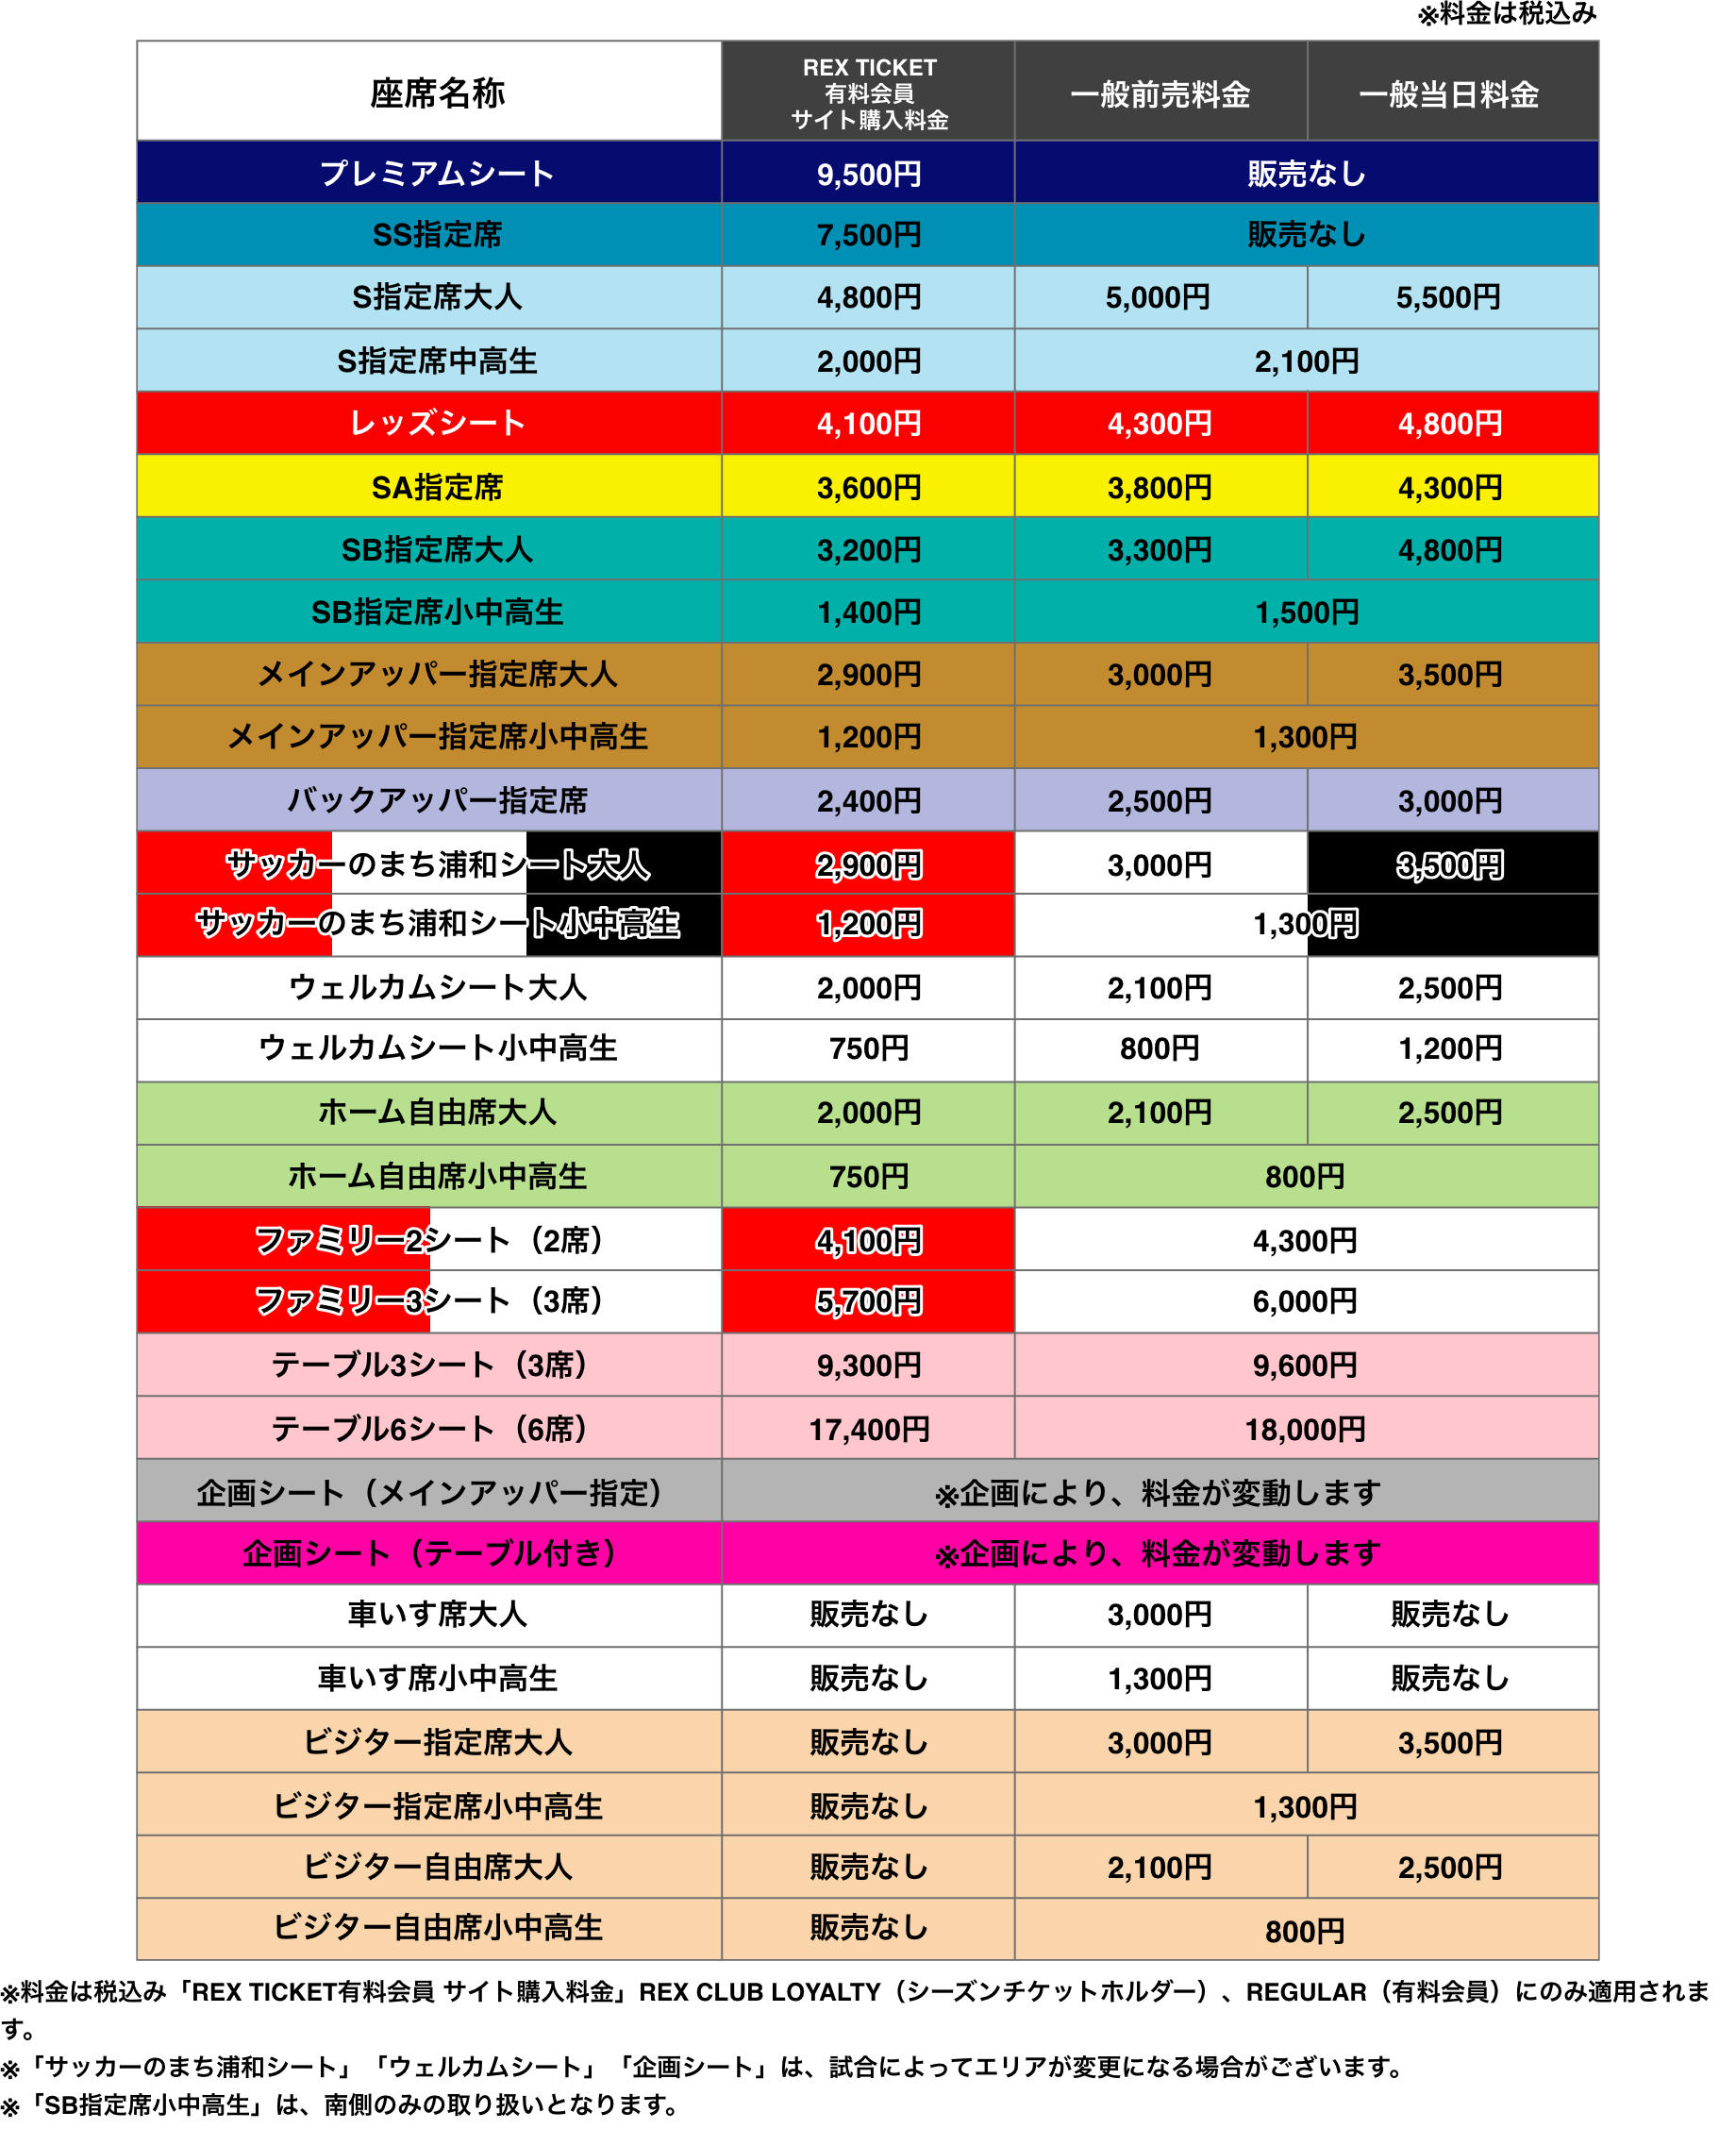 2019 浦和レッズ ホームゲームチケット料金表をチェック